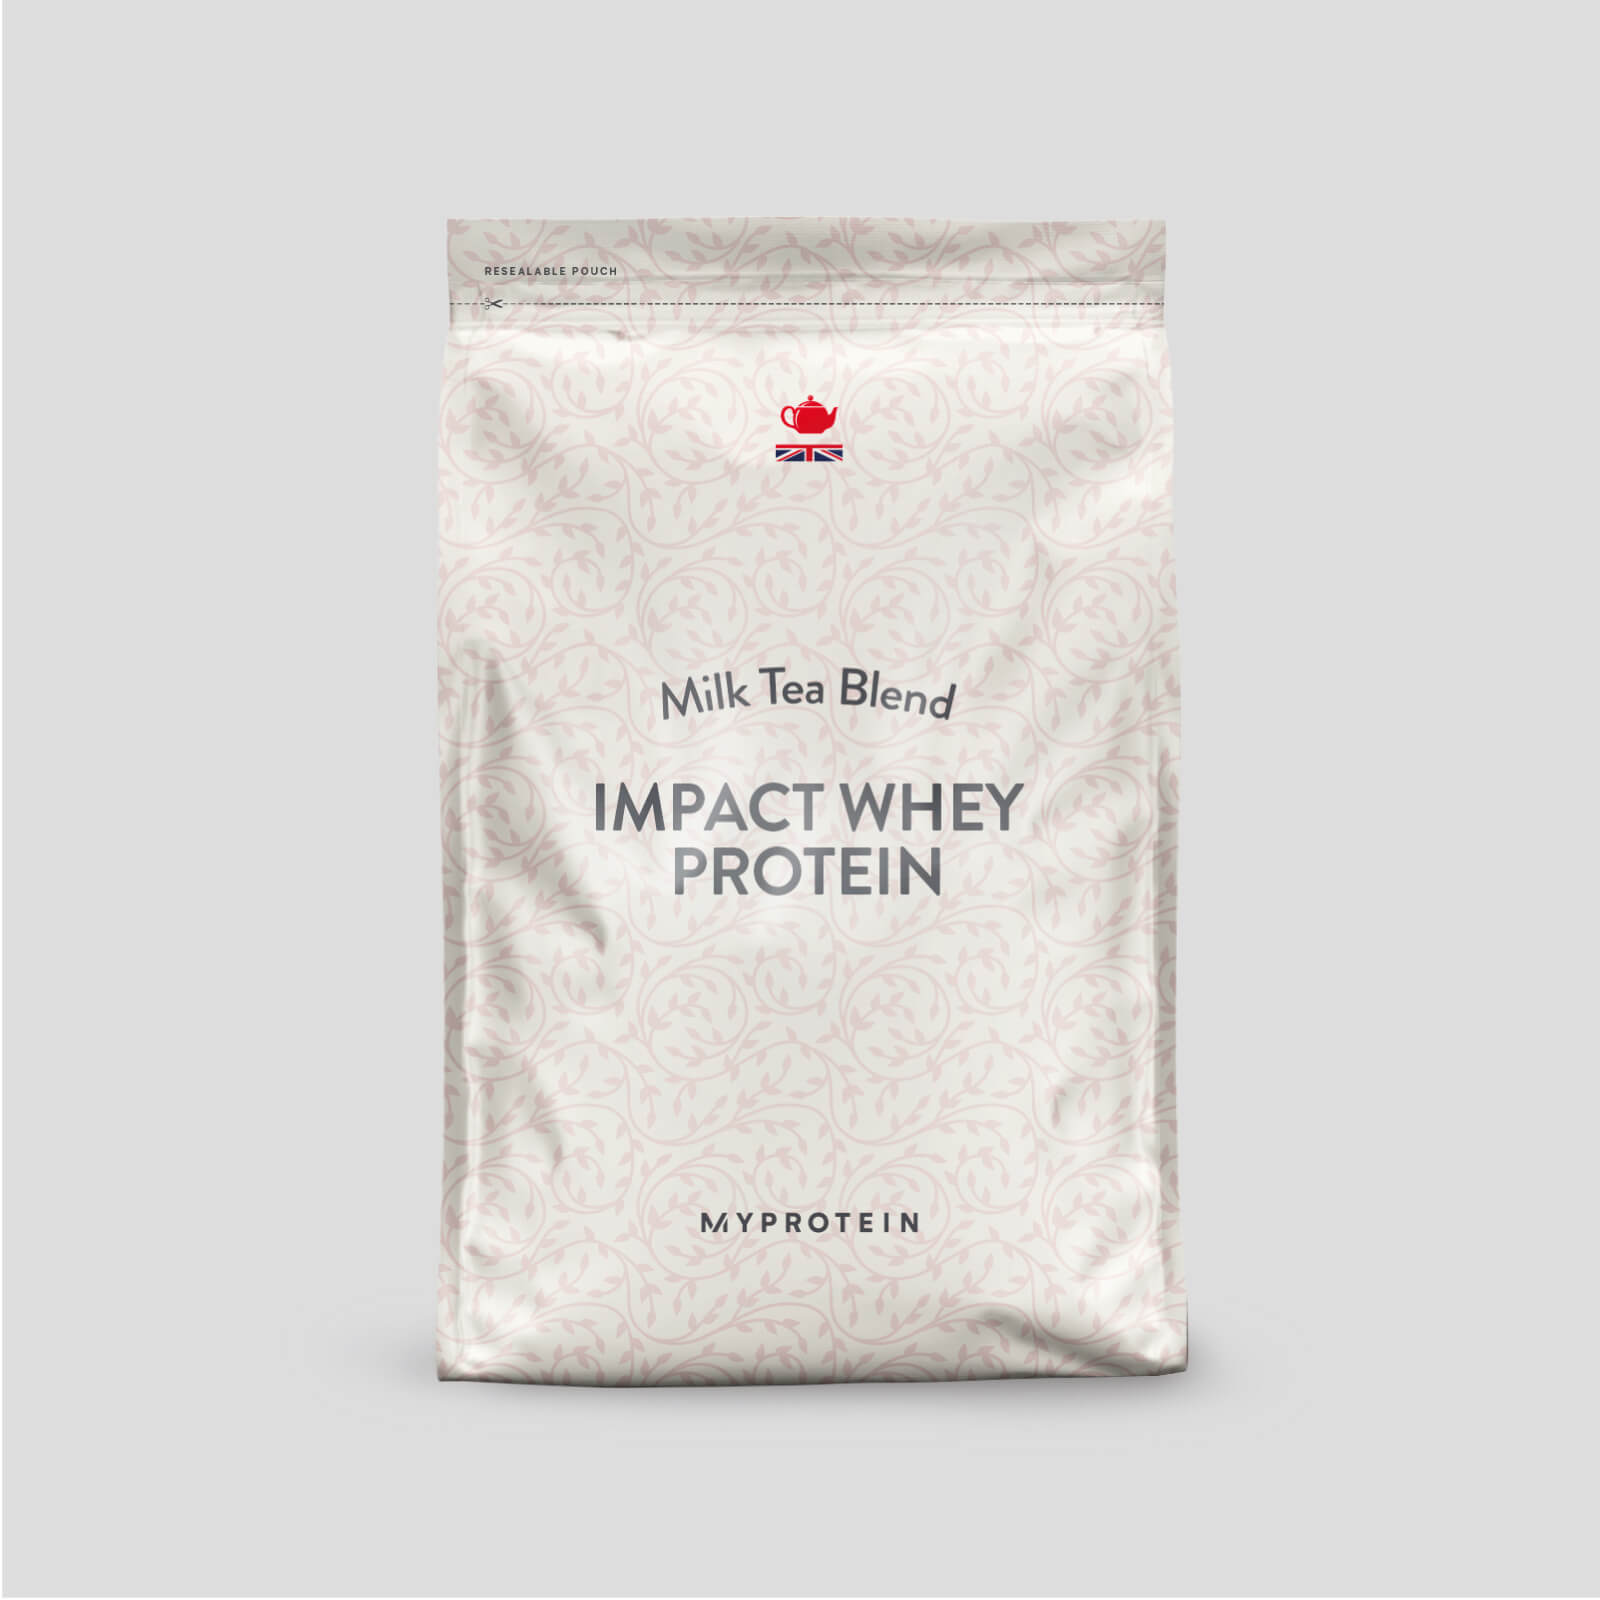 Impact Whey Protein - Thé au Lait - 2.5kg - Milk Tea